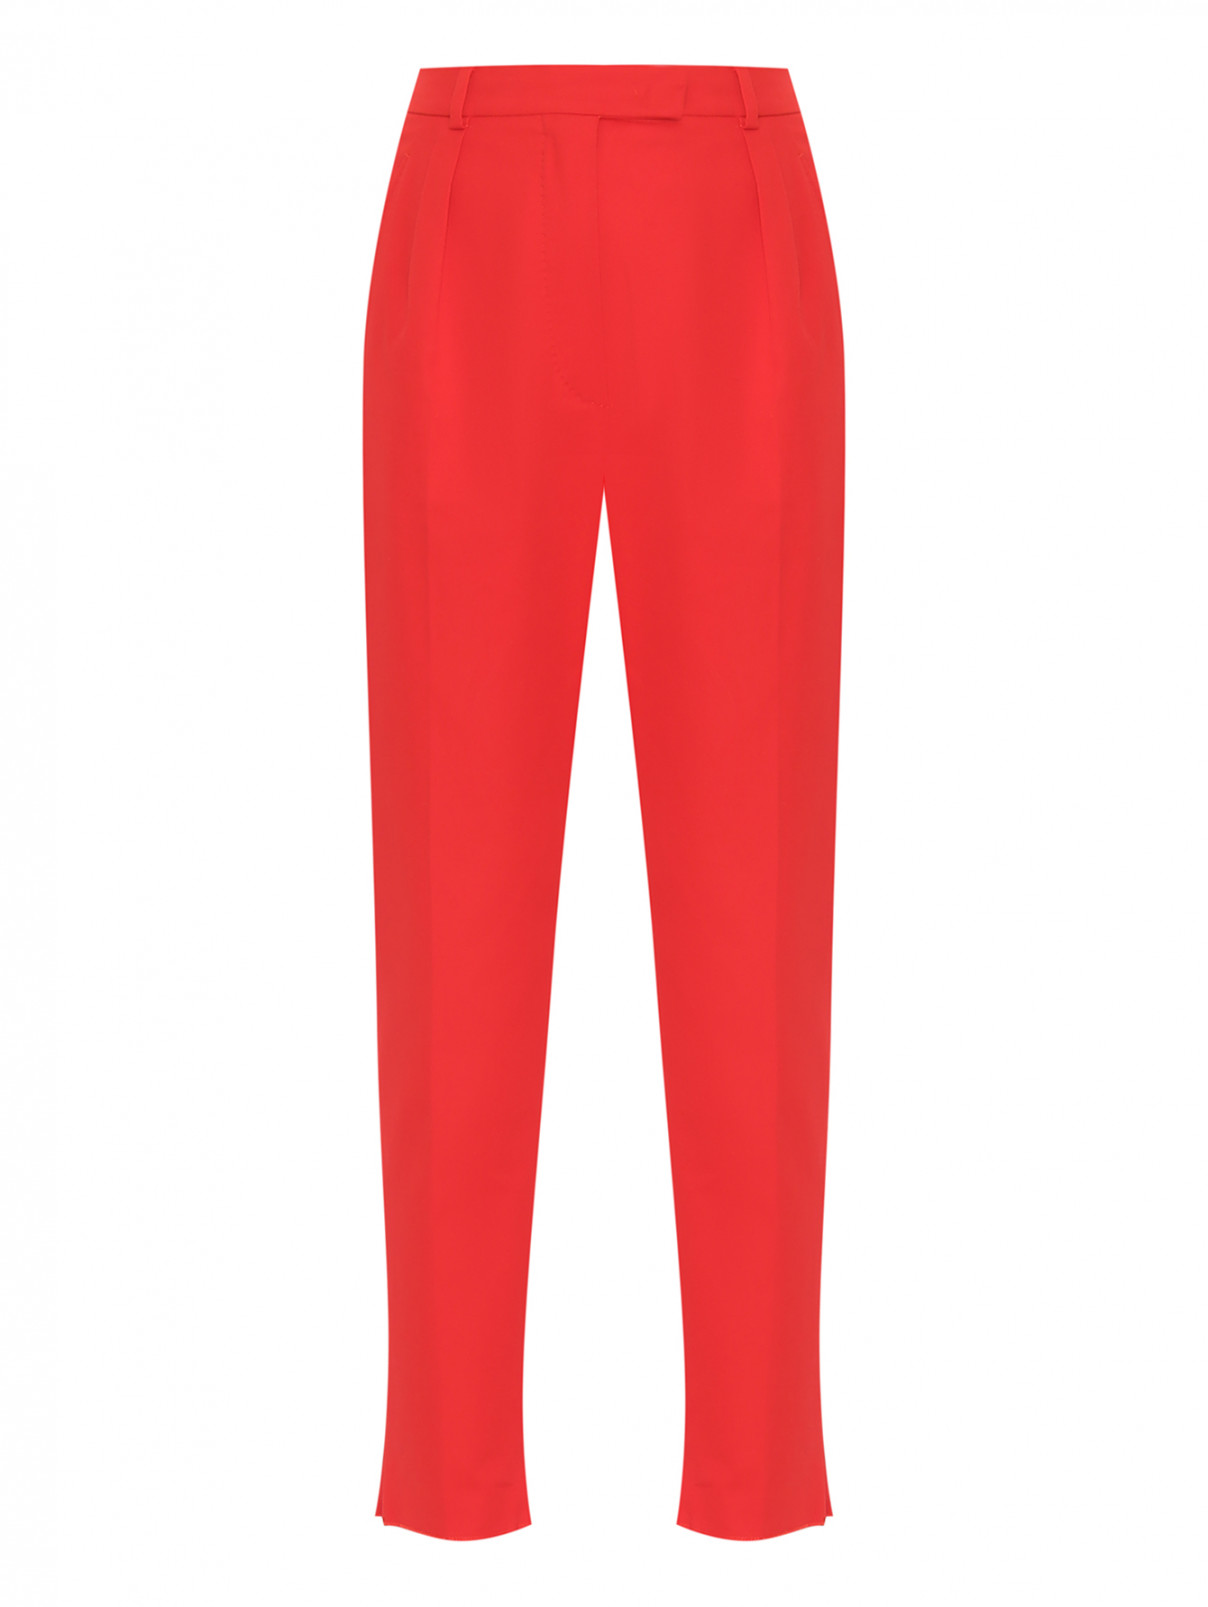 Хлопковые брюки с защипами Max Mara  –  Общий вид  – Цвет:  Красный